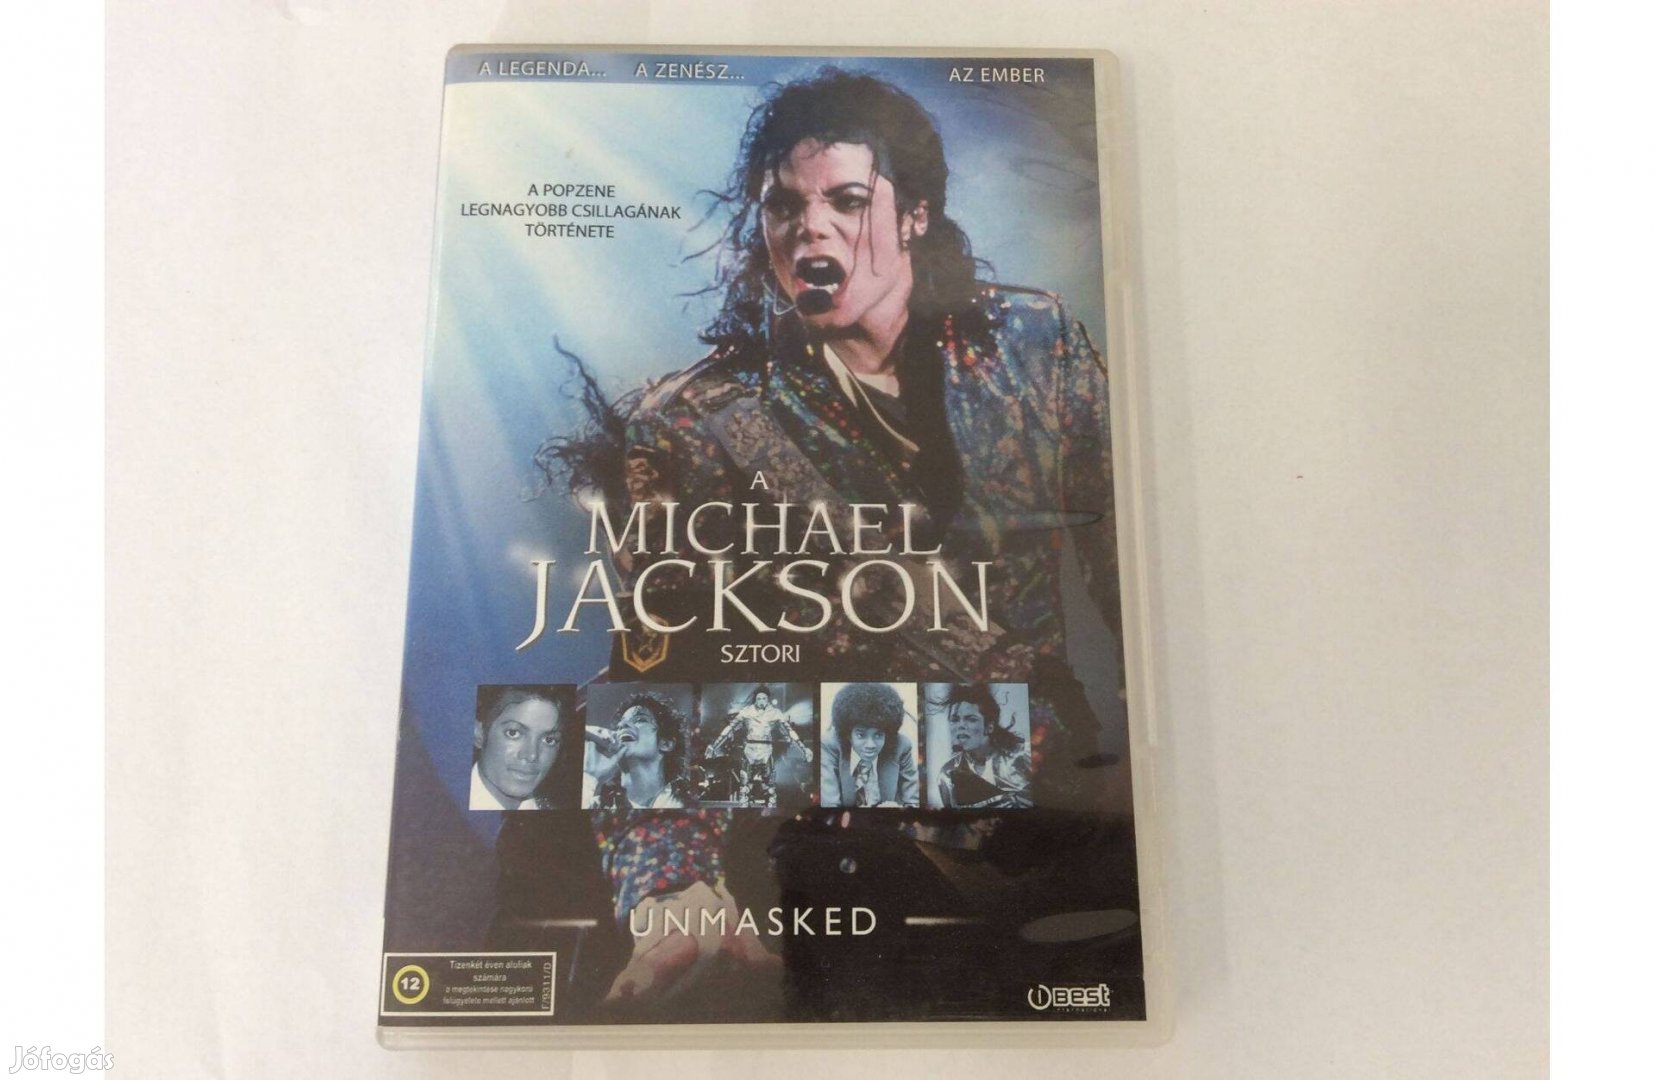 Michael Jackson sztori DVD A popzene legnagyobb csillagának története